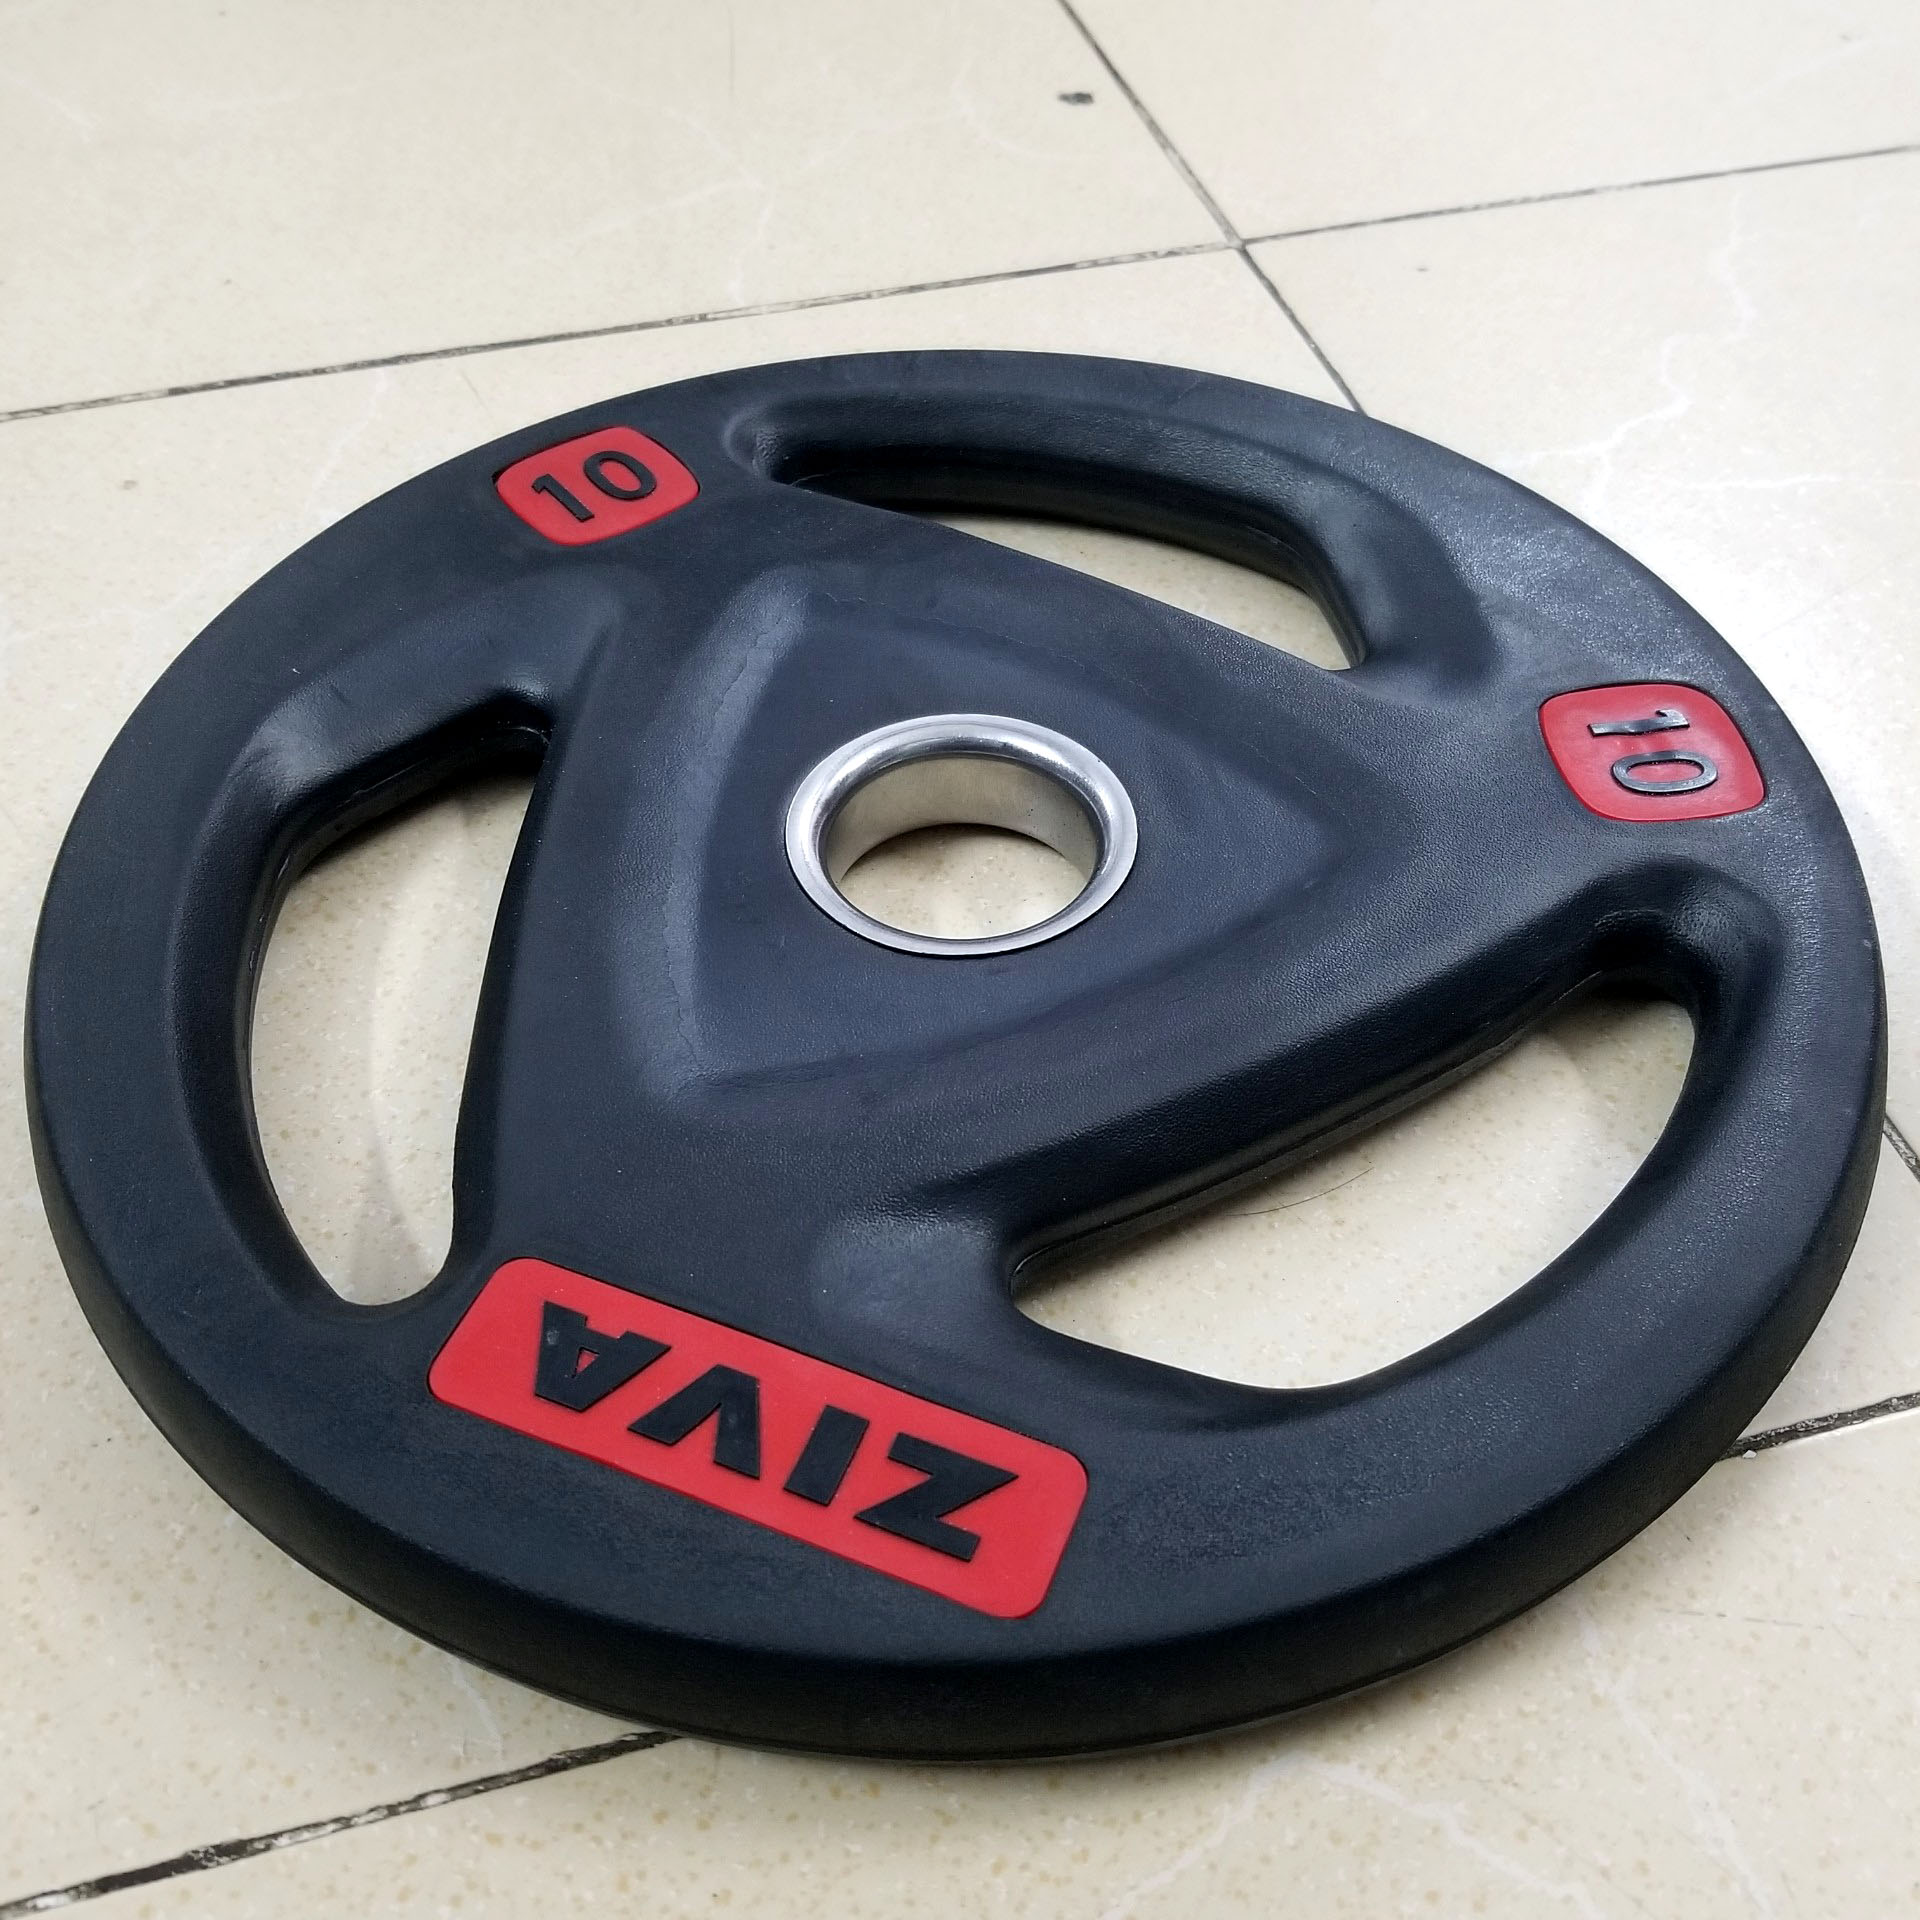 Tạ đĩa bọc cao su Ziva 10kg | Tạ bánh lỗ phi 50 chuyên dùng cho phòng tập và gia đình - Dụng cụ tập GYM cao cấp